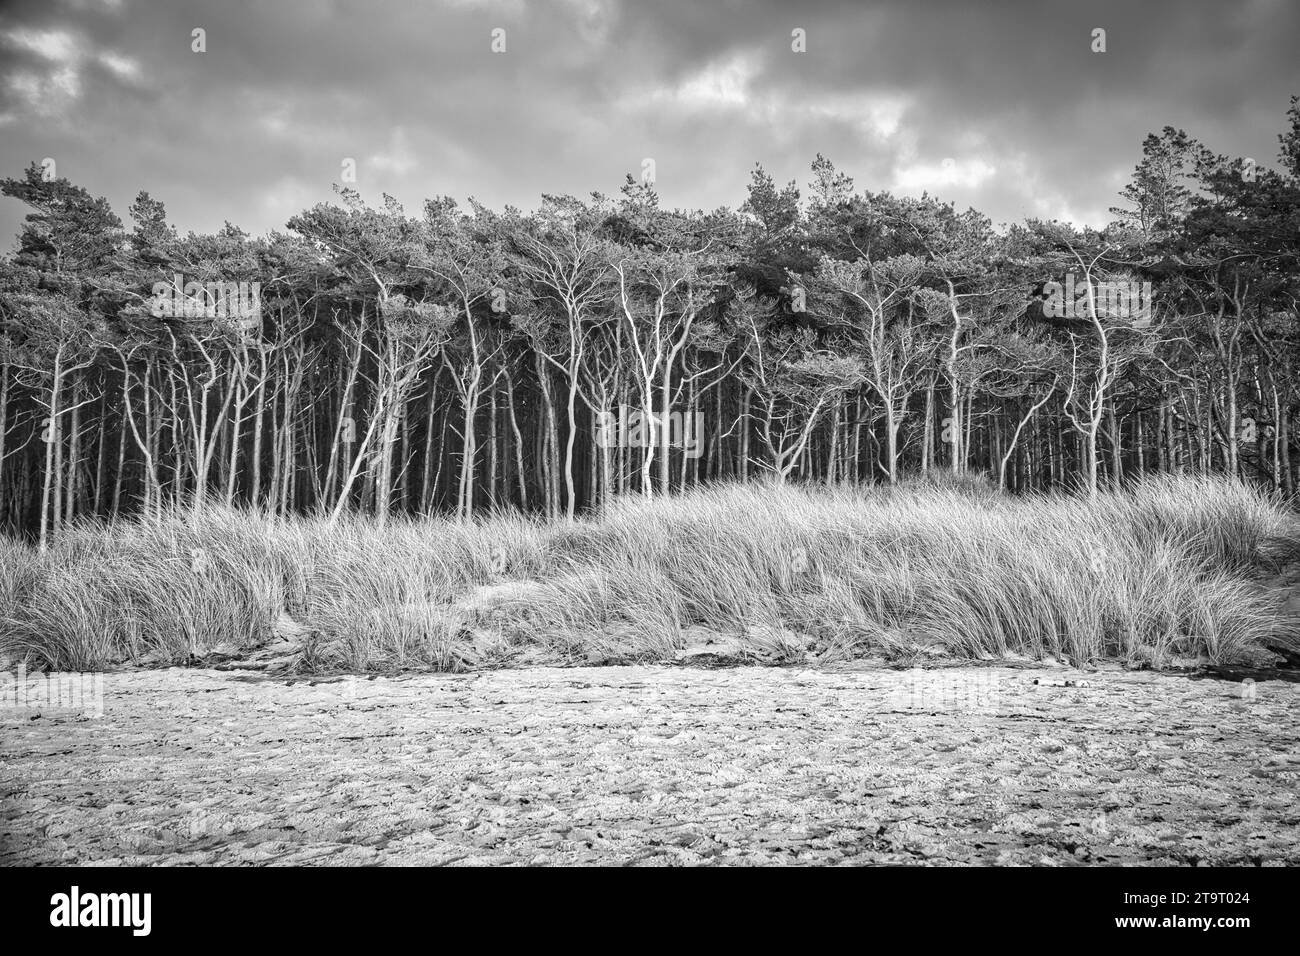 Forêt de pins sur la plage sur le Darss en noir et blanc. Sable blanc sur la plage ouest. Ciel nuageux. Photo paysage Banque D'Images